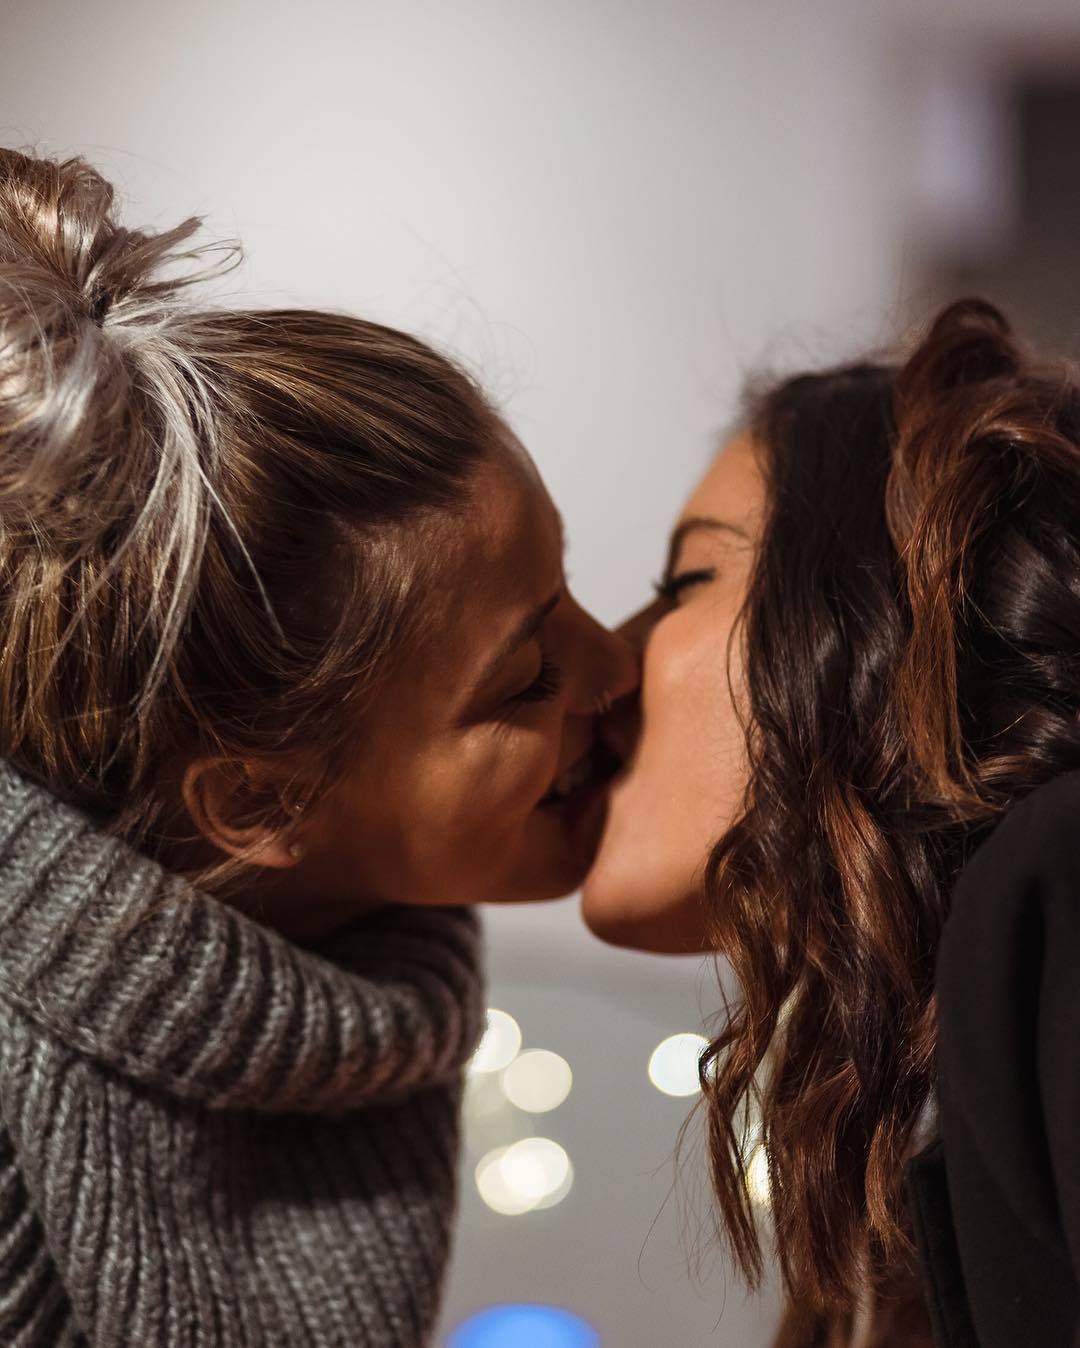 Lesbians 2 girl. Любовь двух женщин. Поцелуй девушек. Девушки целуются. Красивый поцелуй двух девушек.